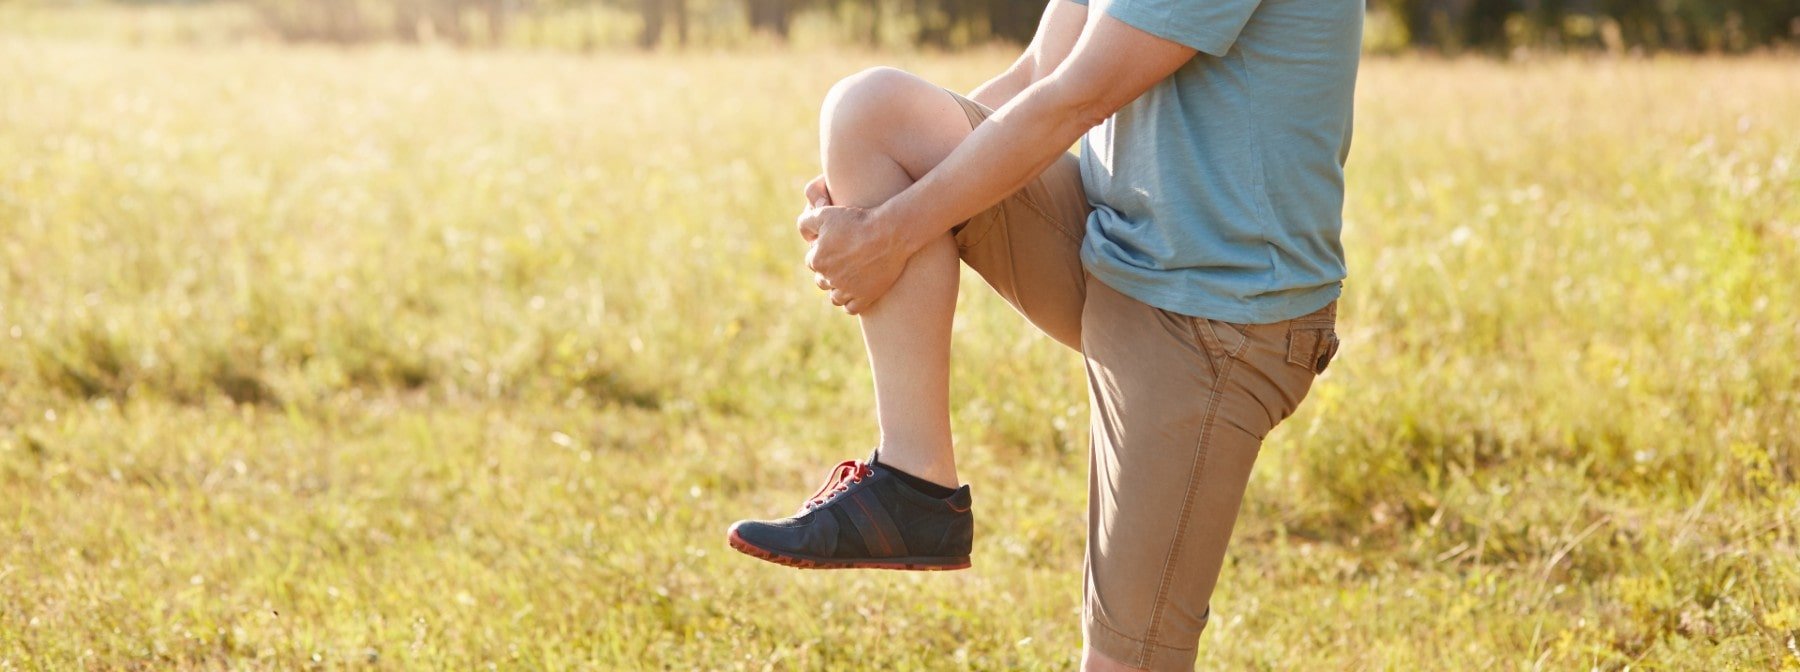 Το να στέκεσαι στο ένα πόδι μπορεί να ωφελήσει την υγεία σου, σύμφωνα με μελέτη